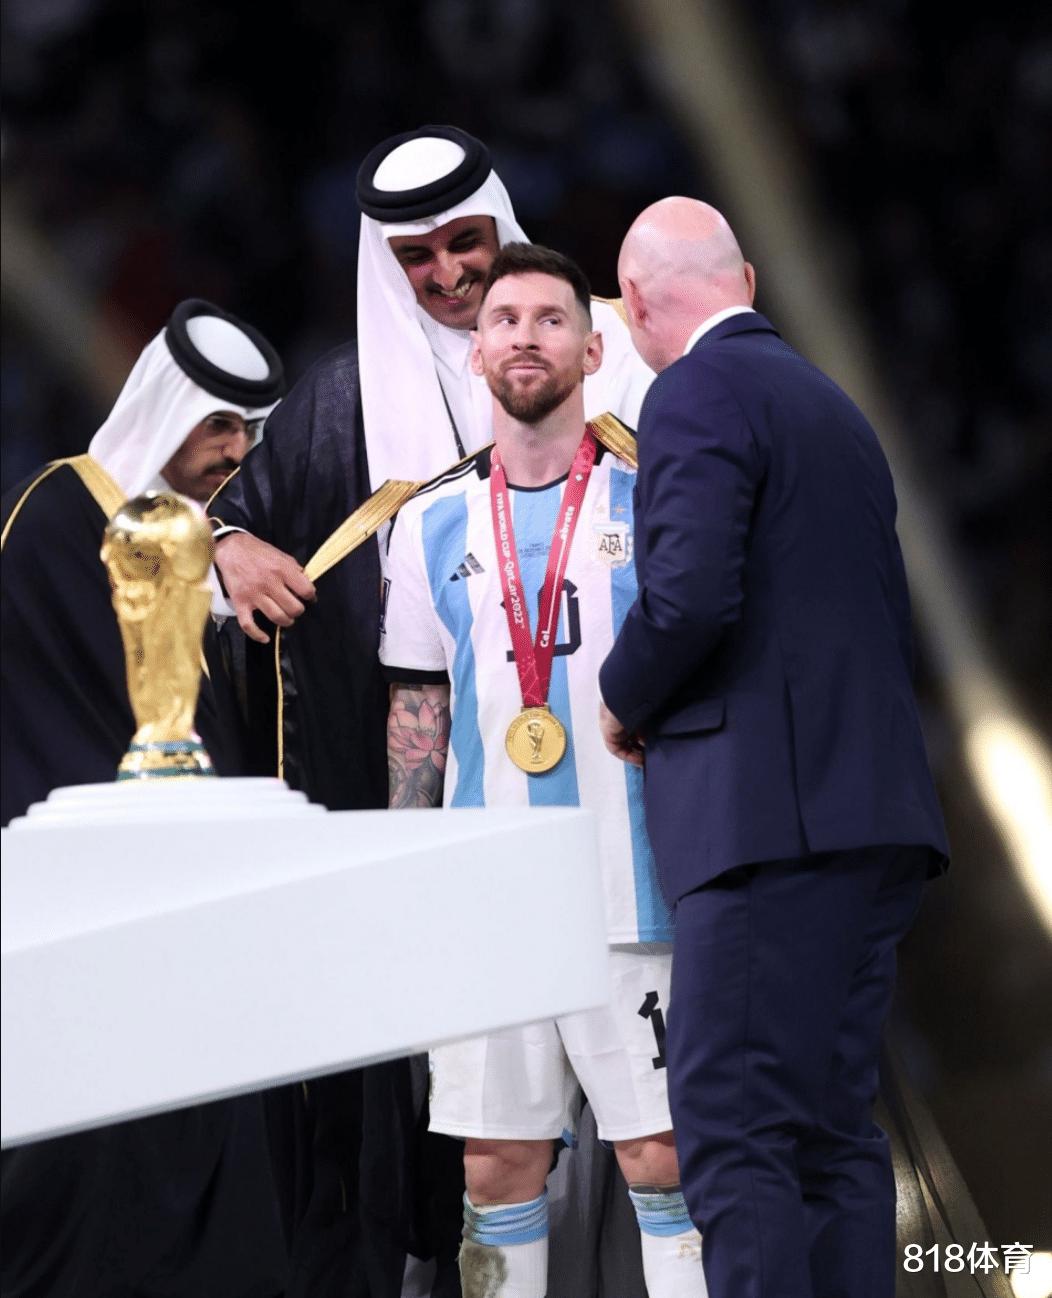 球王加冕! 卡塔尔国王为梅西披上王室黑袍, 因凡蒂诺陪着笑脸递上世界杯(8)